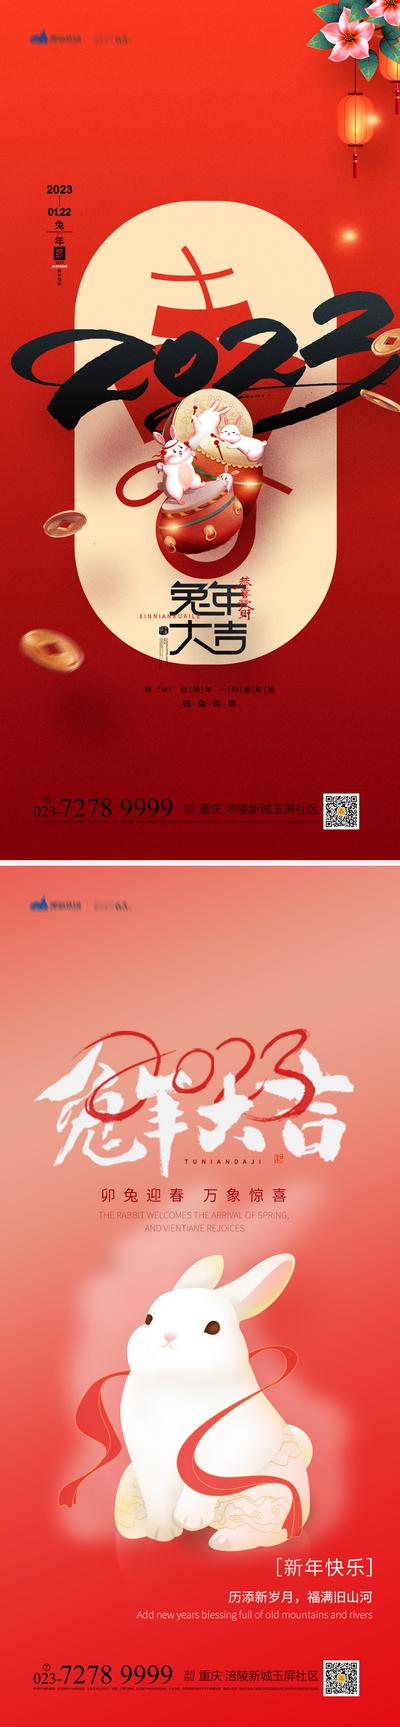 南门网 海报 中国传统节日 春节 新春 新年 兔年 兔子 插画